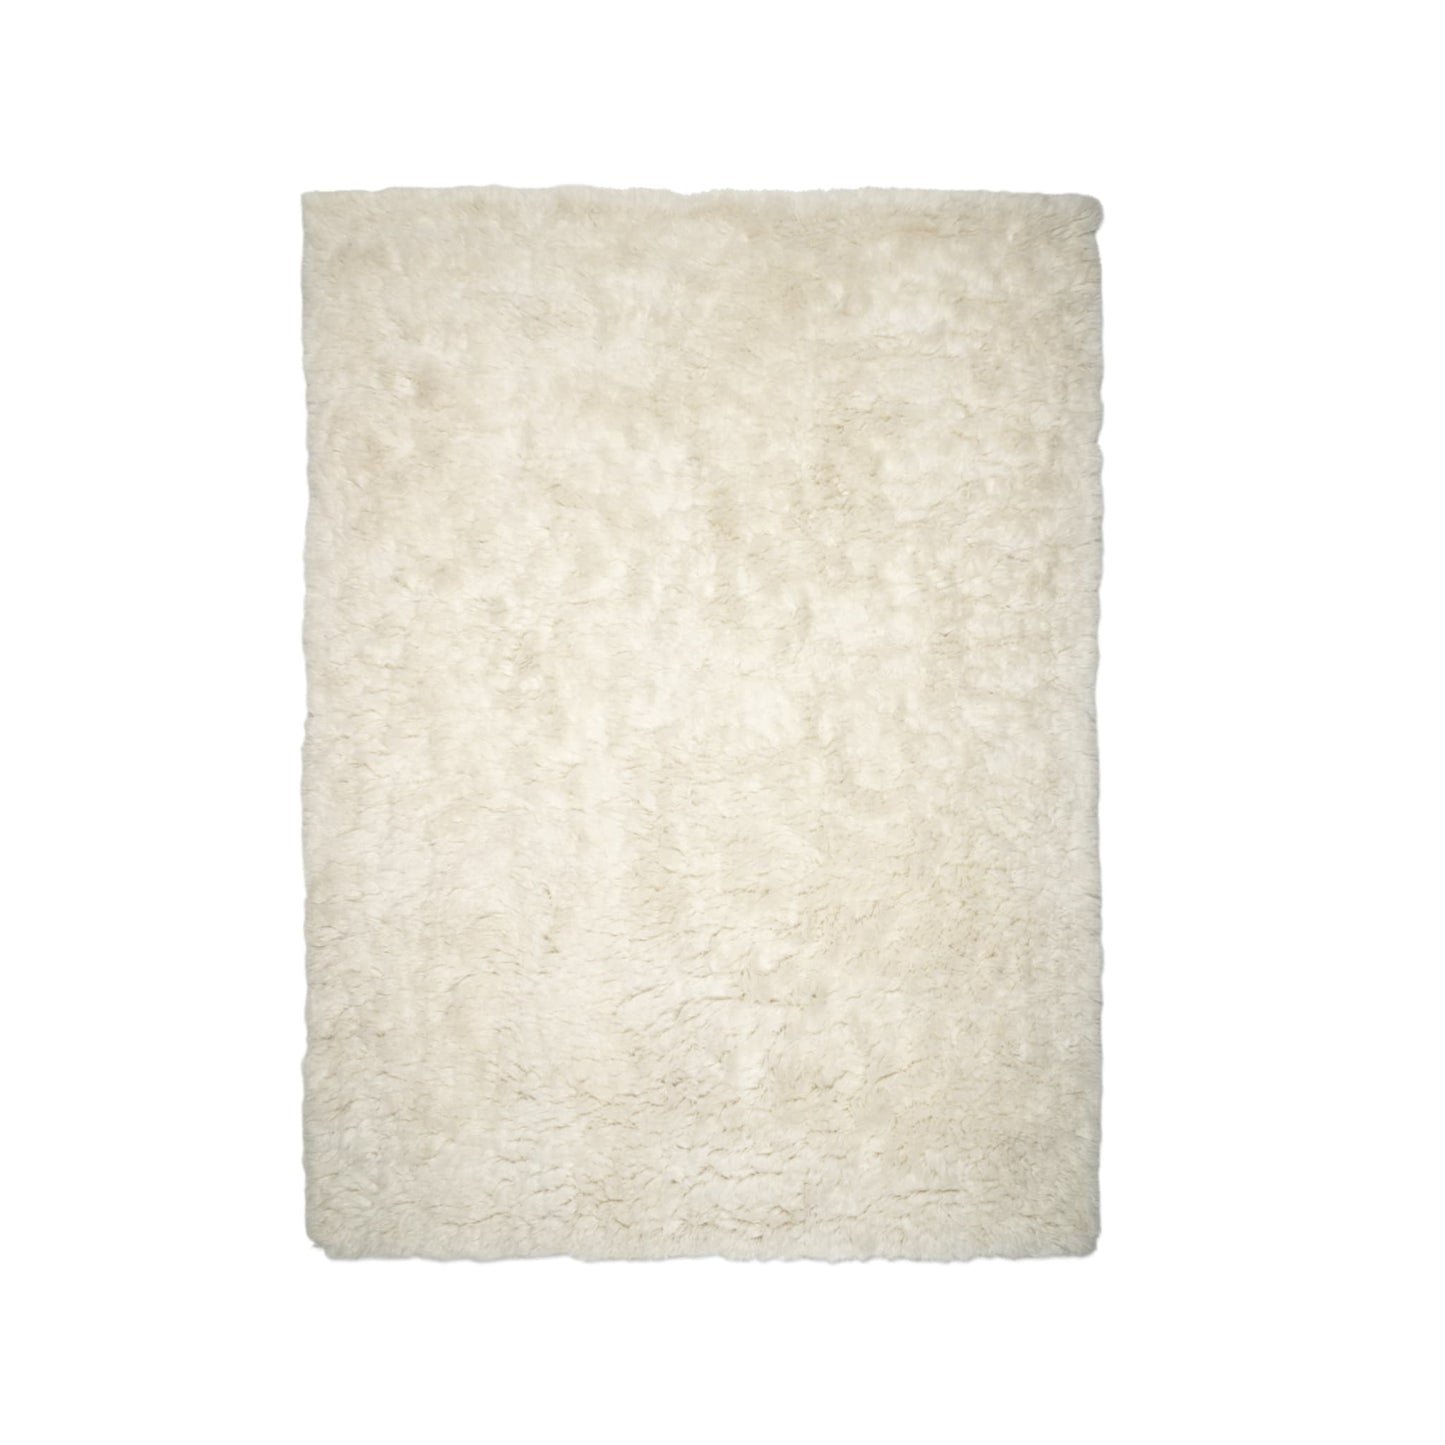 Cloudy rug white